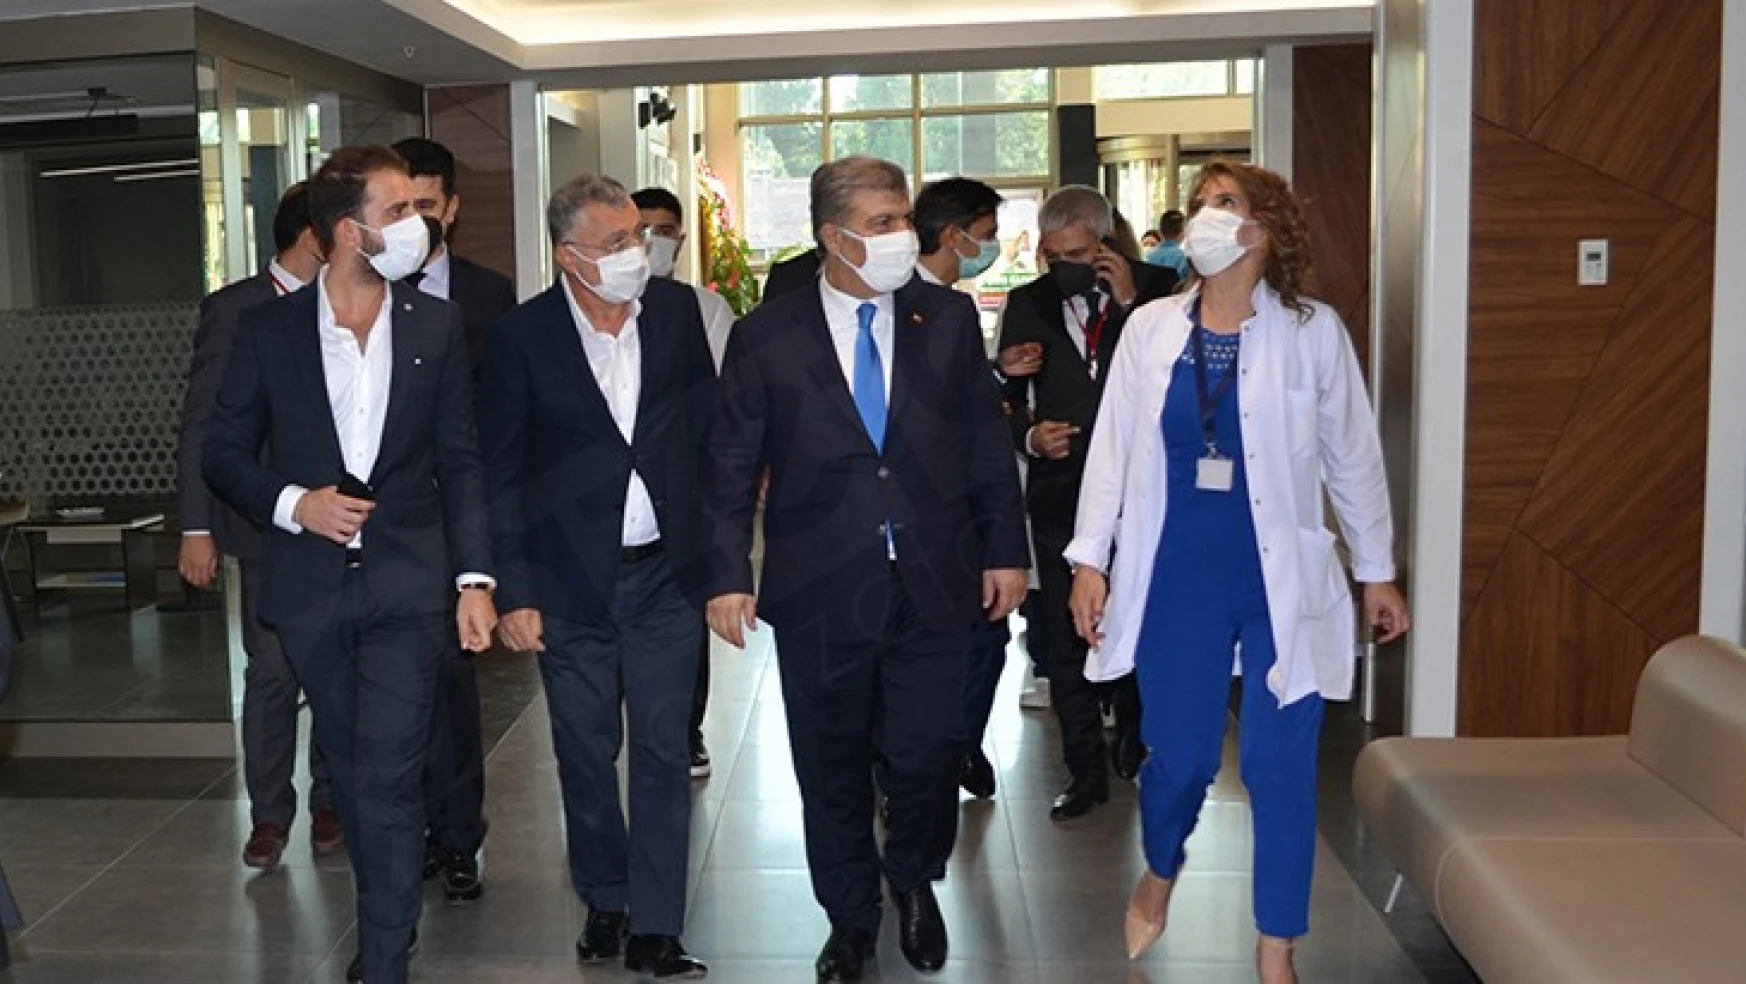 Sağlık Bakanı Dr. Fahrettin Koca, Sular Akademi Hastanesi'nin açılışına katıldı